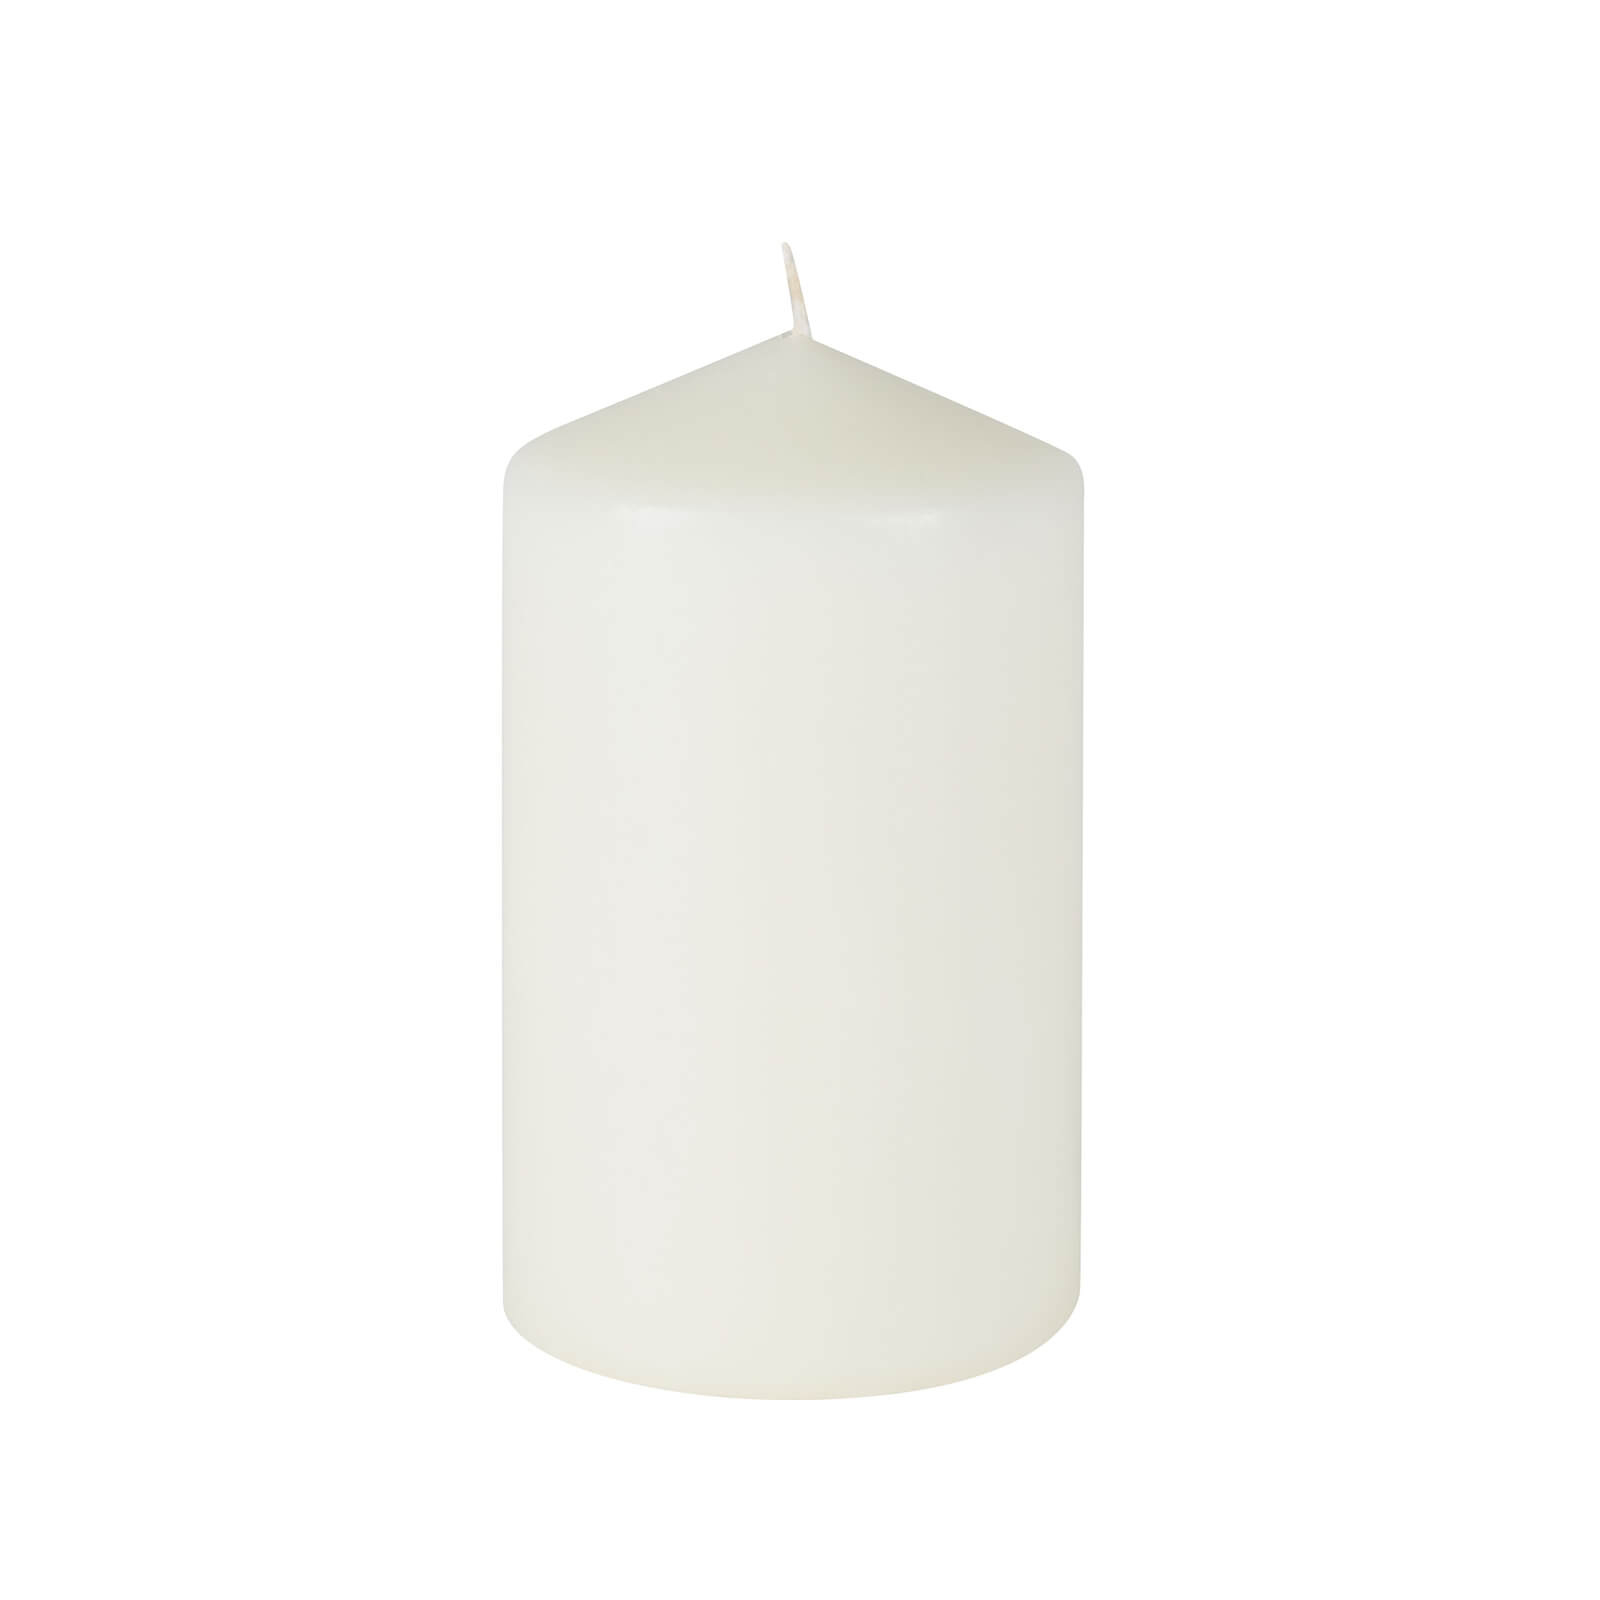 Photo of Medium Pillar Candle - Ivory